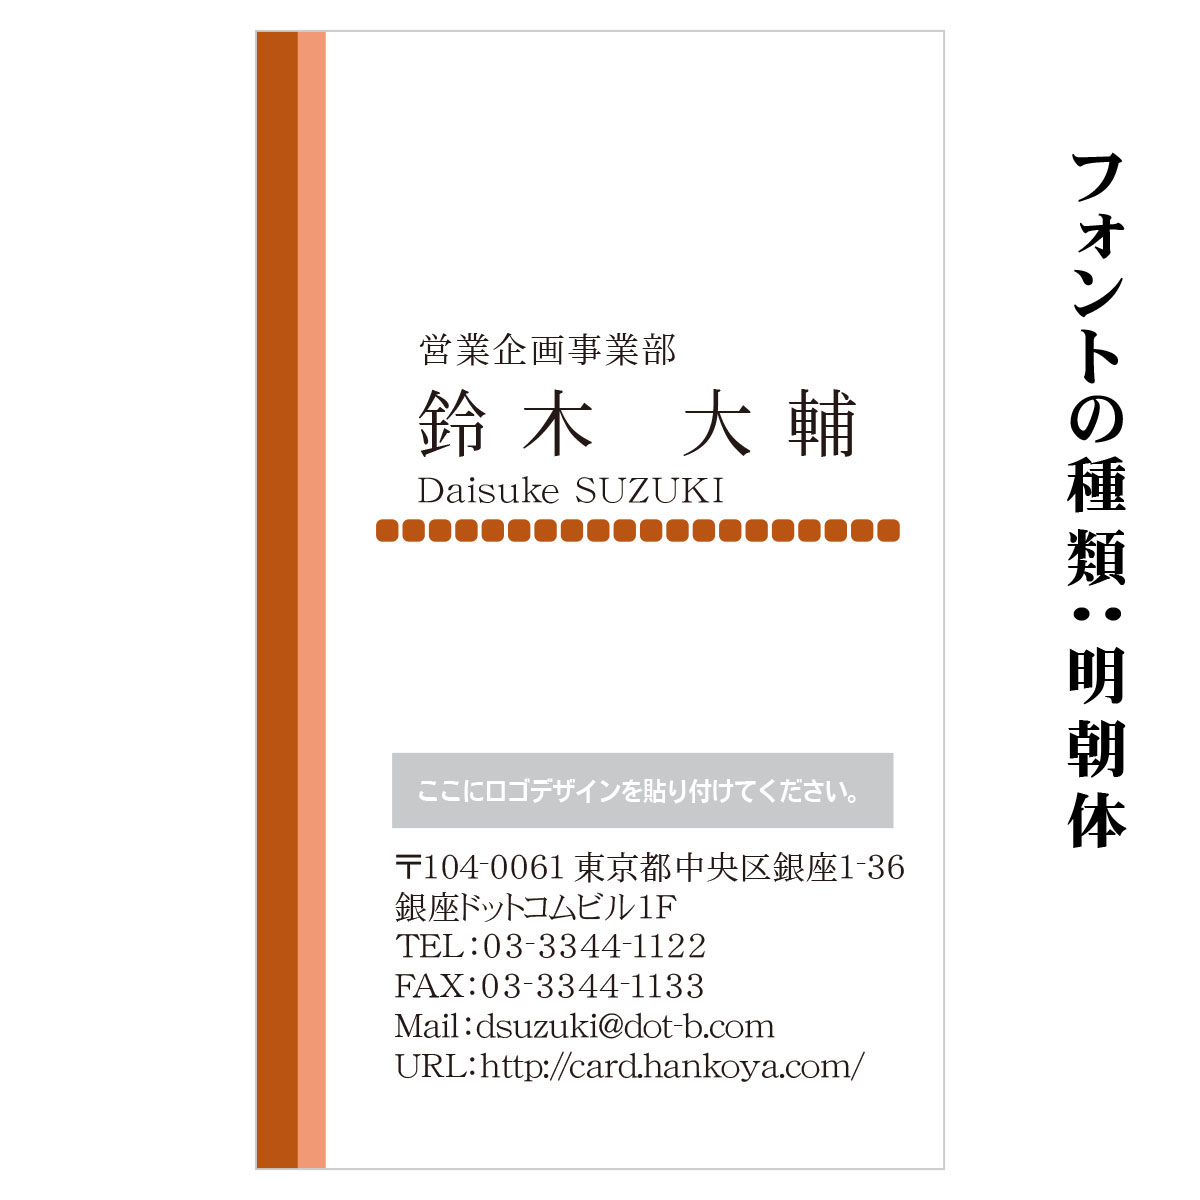 テキスト入稿名刺 タテ向き両面カラー印刷 HR-01 英語表記